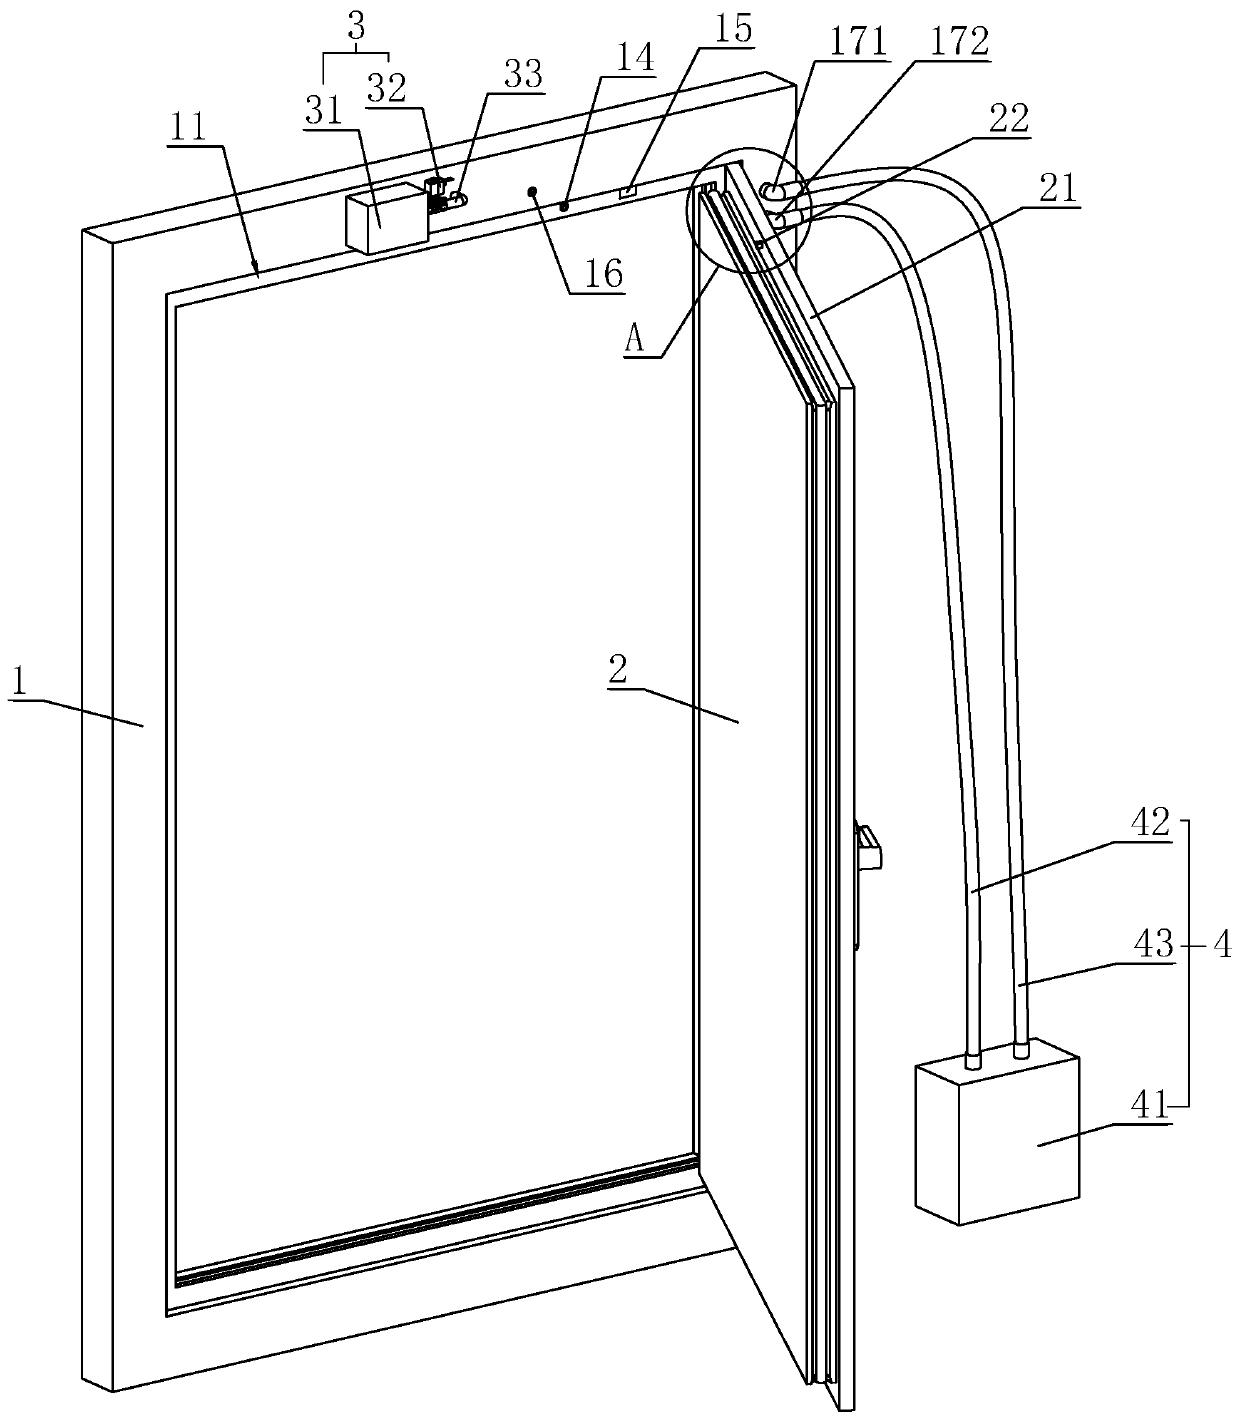 Airtight door system